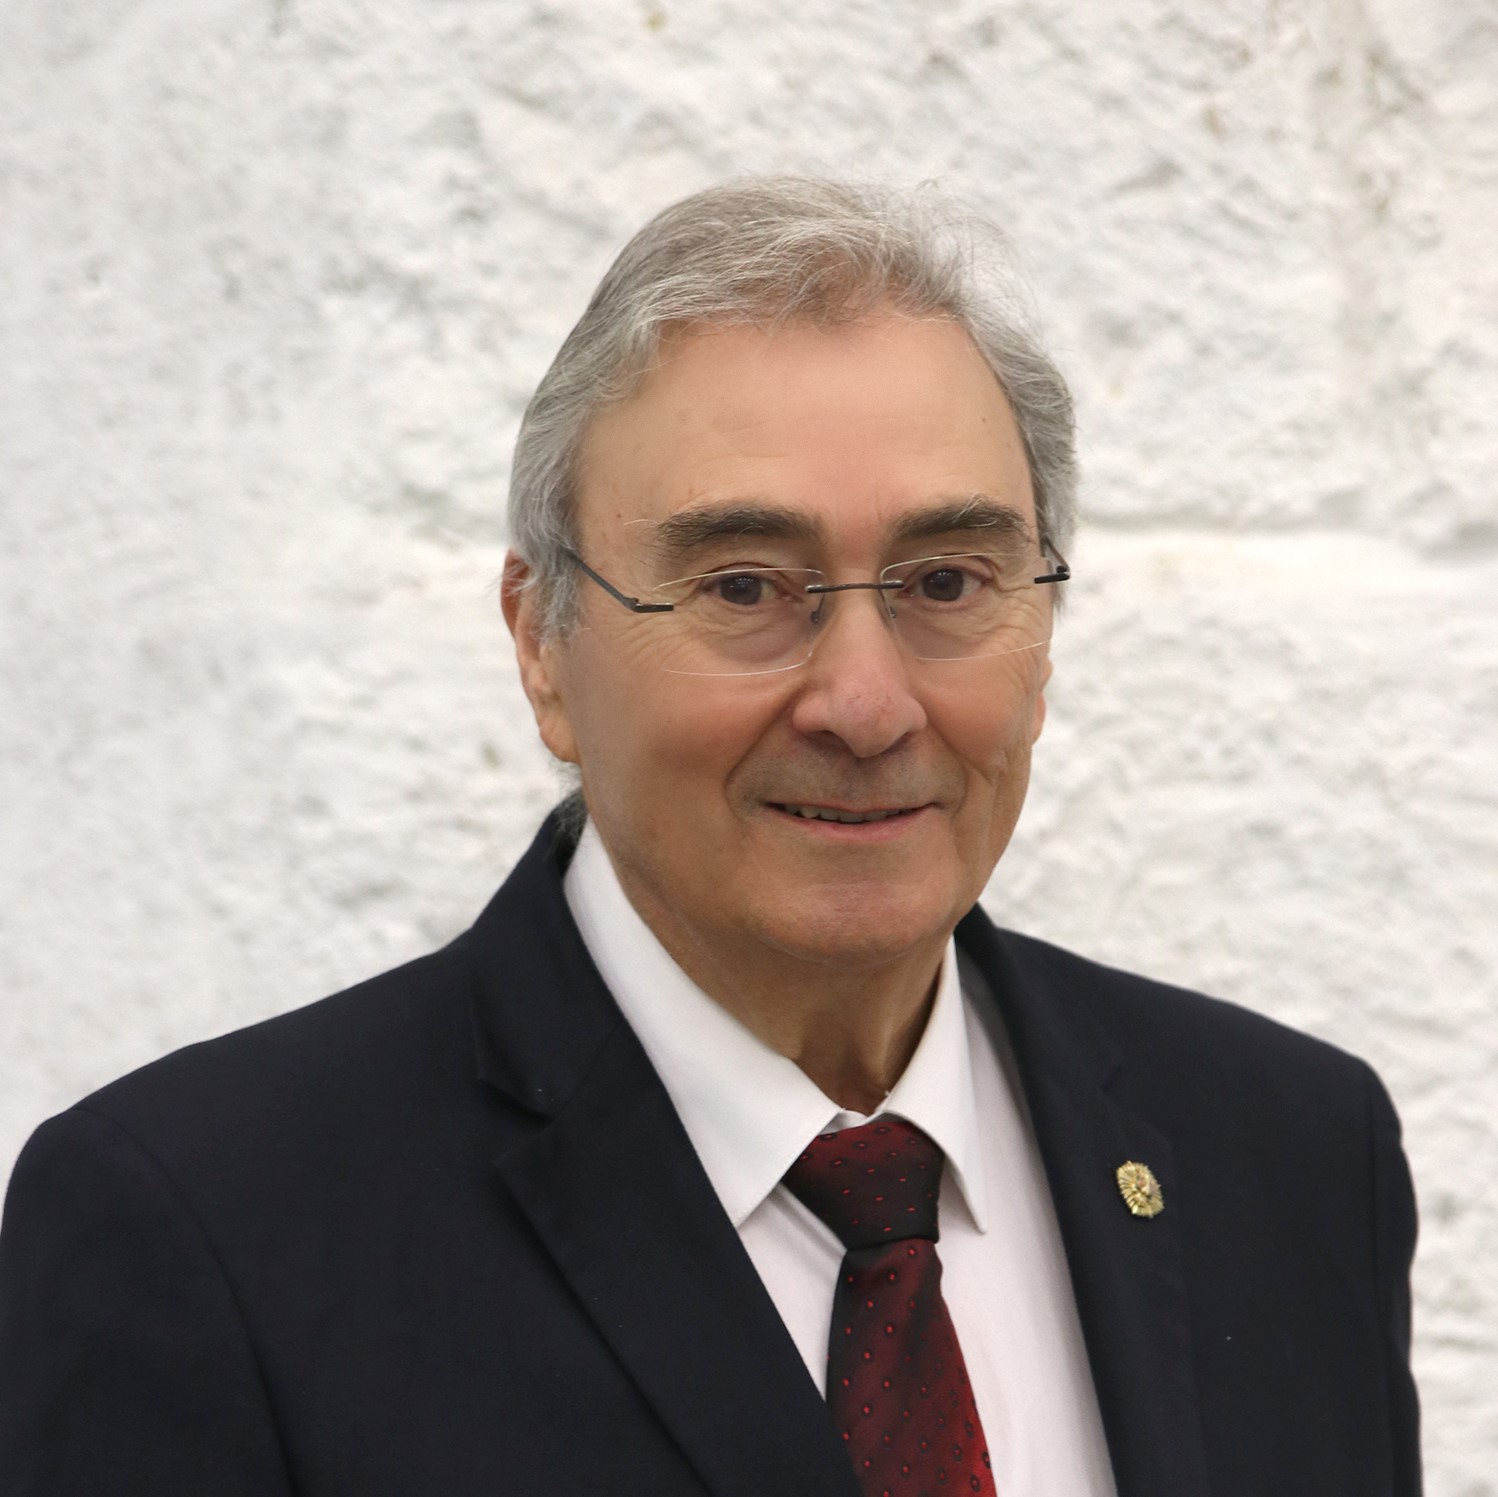 Antonio Segarra